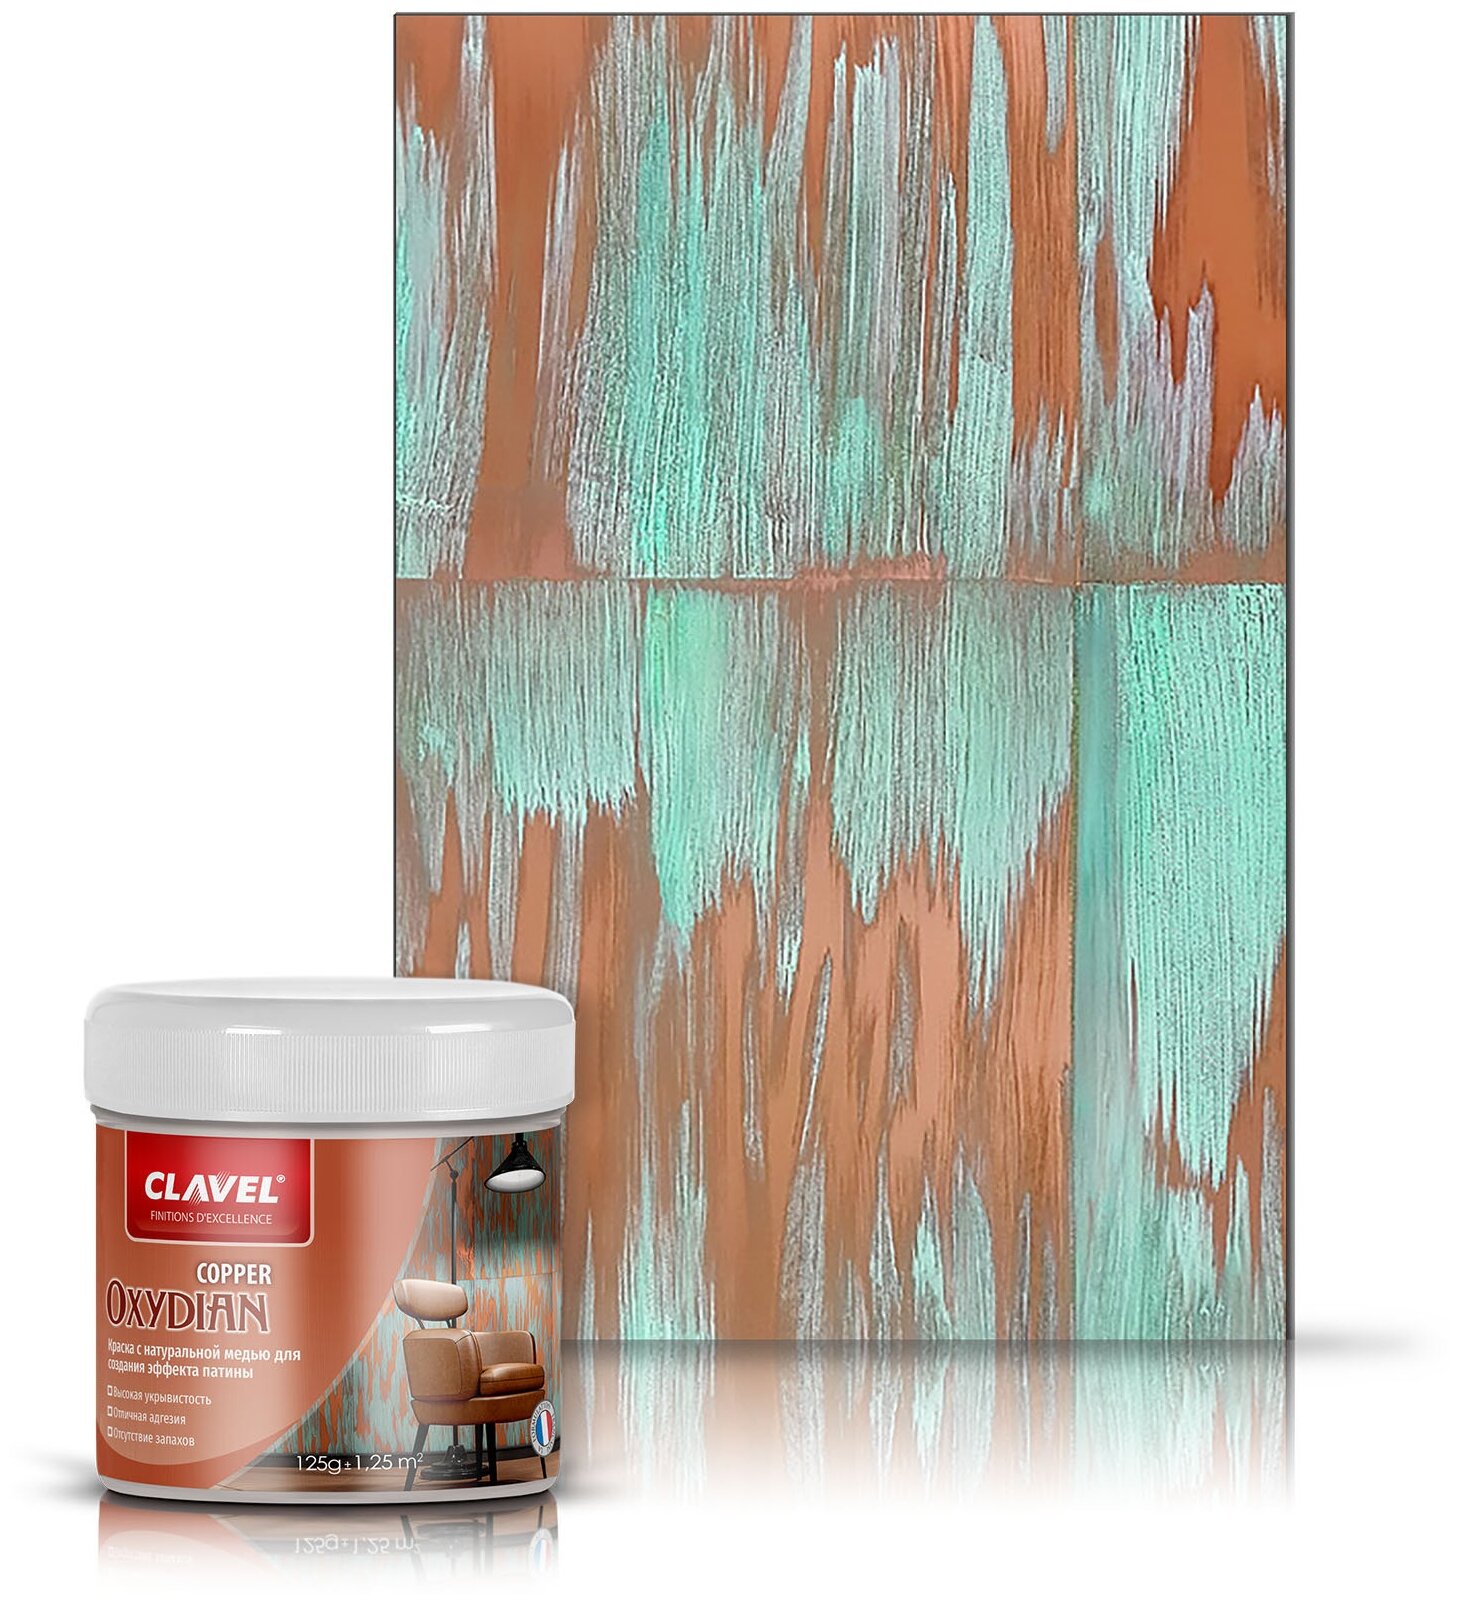 Декоративная краска Clavel Oxydian Copper для создания эффекта патины, 0,125 кг, медь